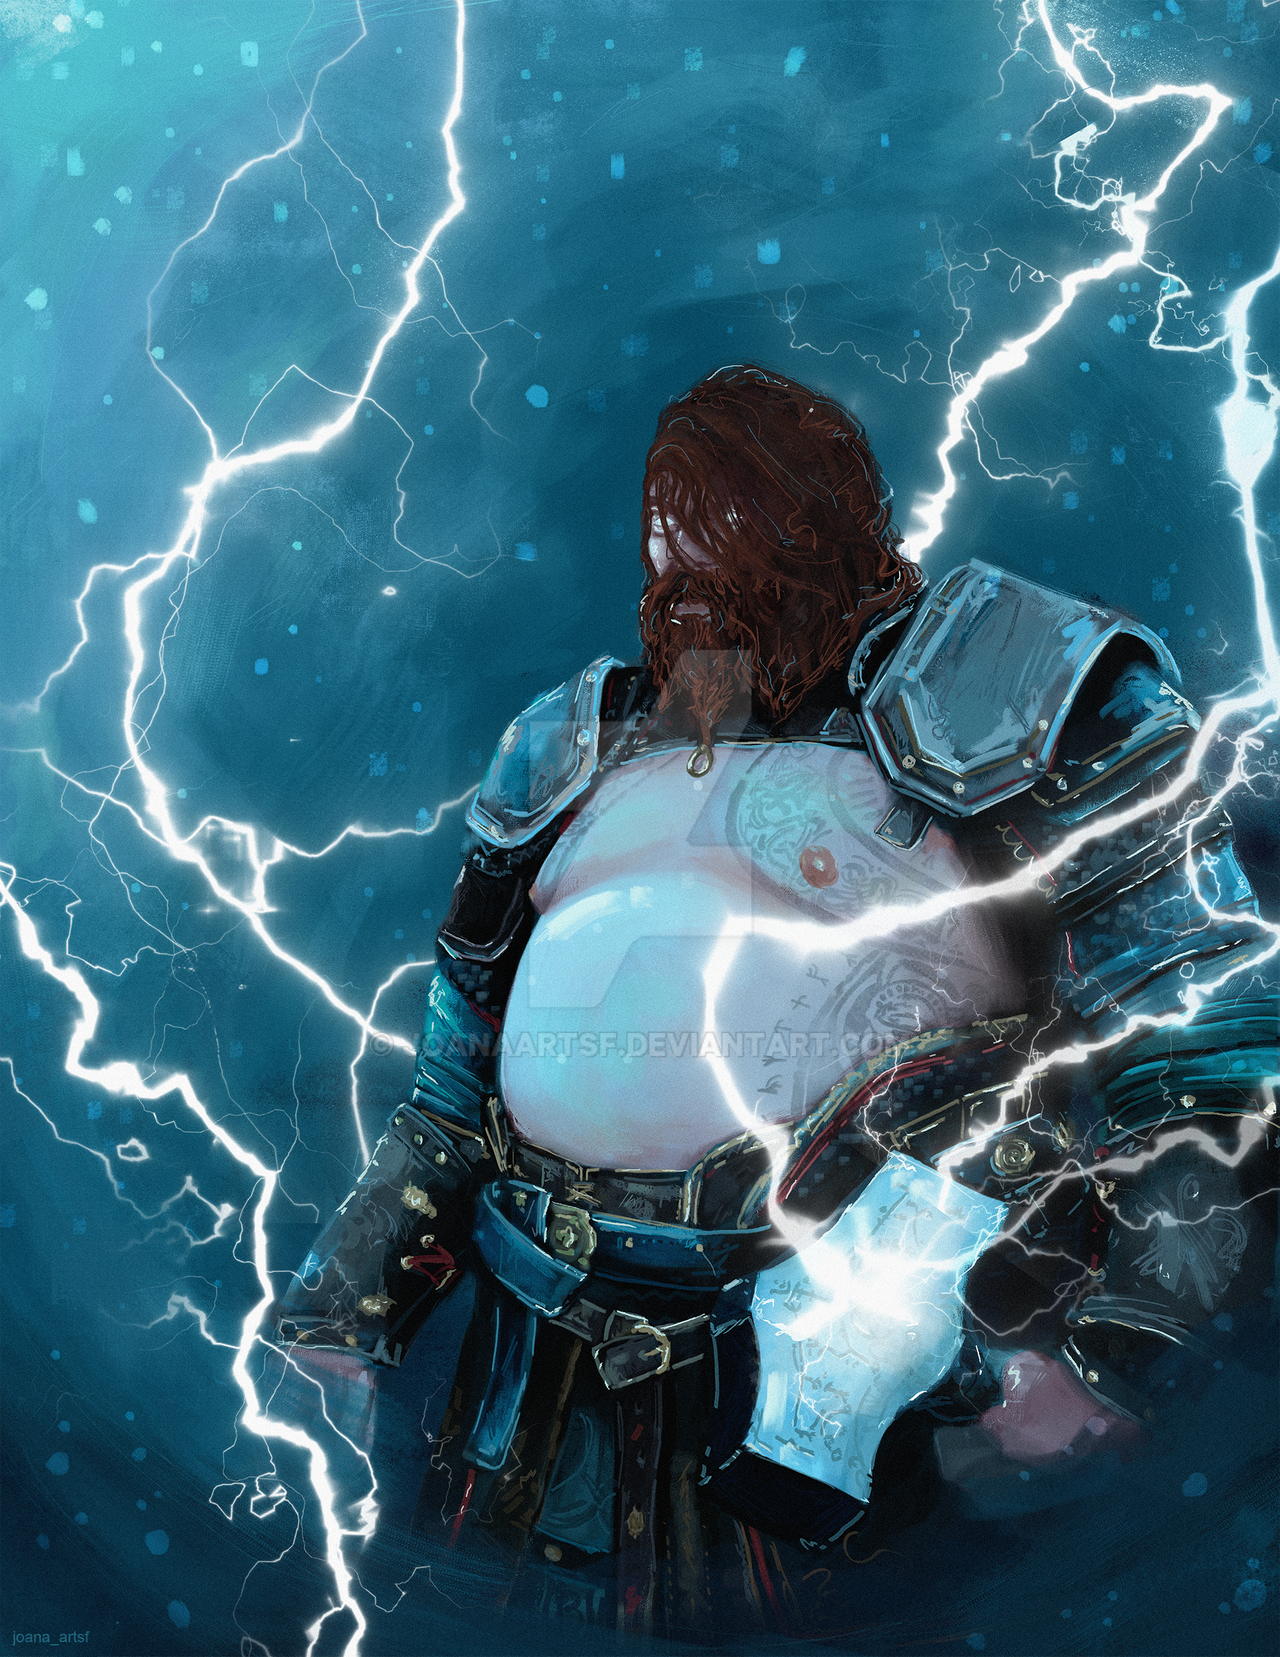 Thunder God's Height: Measuring Thor's Size in God of War Ragnarok